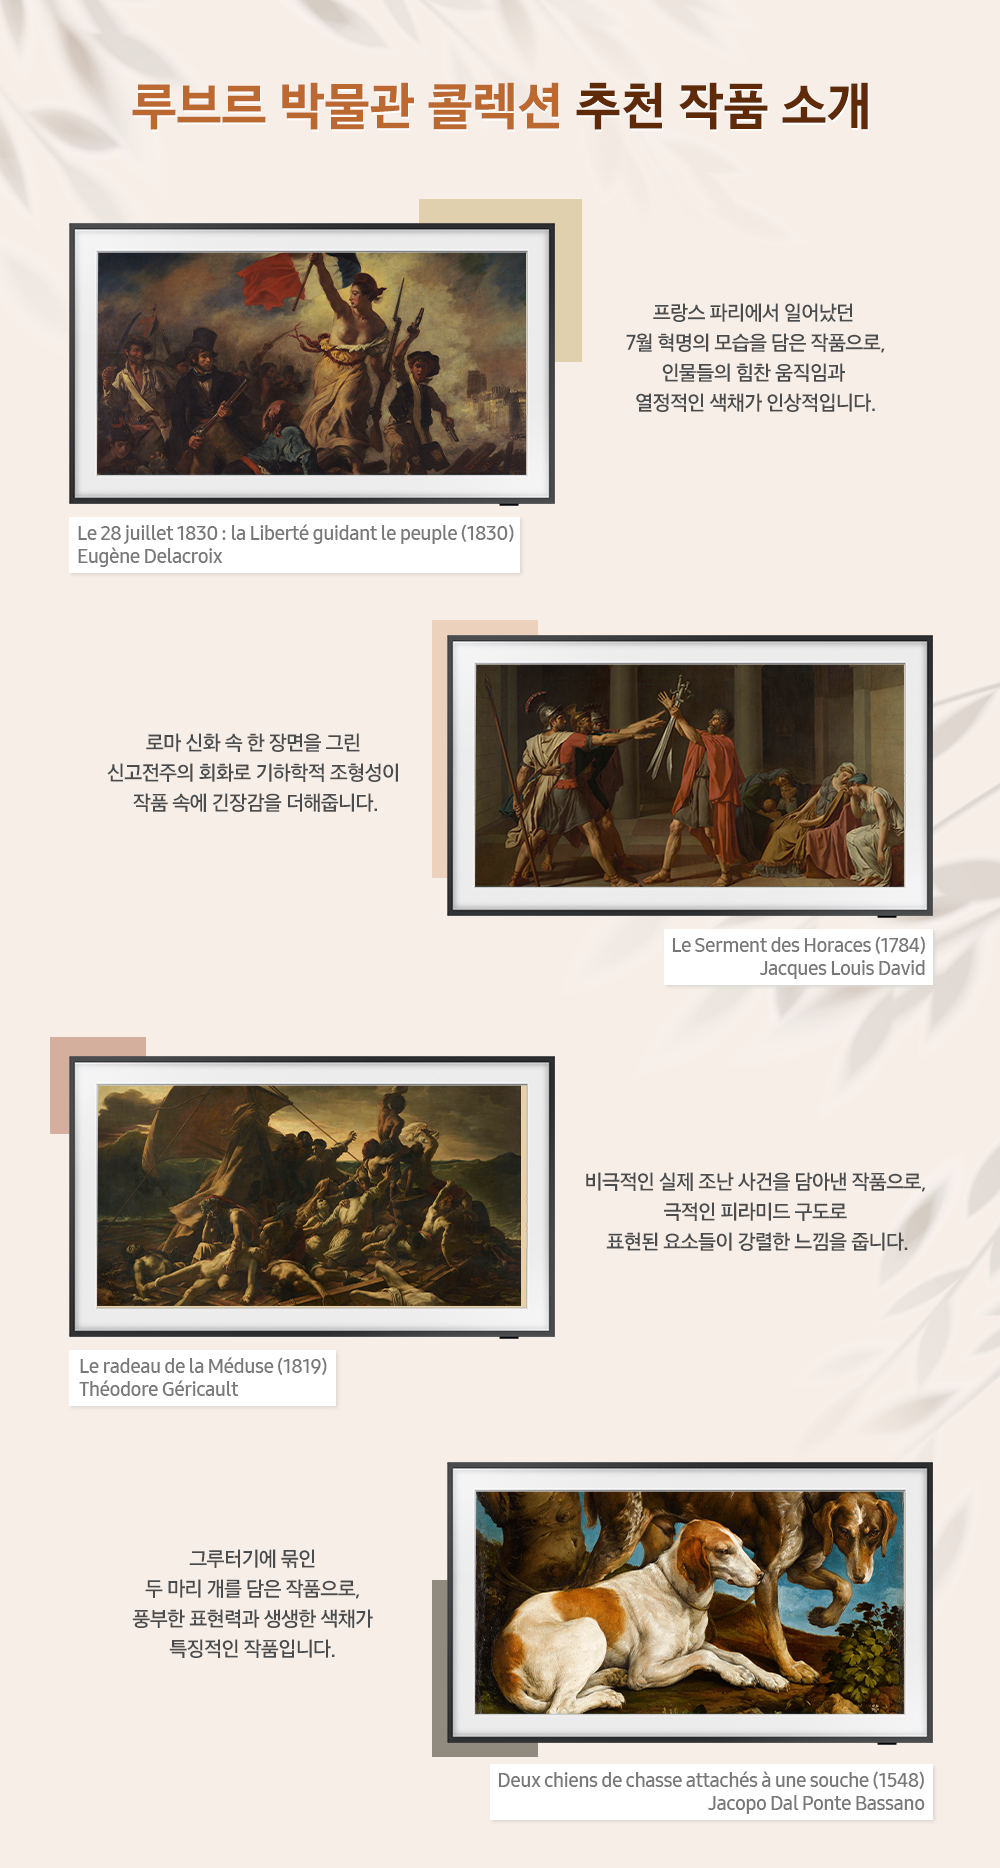 루브르 박물관 콜렉션 추천 작품 소개 Le 28 juillet 1830 : la Liberte guidant le peuple(1830) Eugene Delacroix 프랑스 파리에서 일어났던 7월 혁명의 모습을 담은 작품으로, 인물들의 힘찬 움직임과 열정적인 색채가 인상적입니다. Le Serment des Horaces(1784) Jacques Louis David 로마 신화 속 한 장면을 그린 신고전주의 회화로 기하학적 조형성이 작품 속에 긴장감을 더해줍니다. Le radeau de la meduse(1819) Theodore Gericault 비극적인 실제 조난 사건을 담아낸 작품으로, 극적인 피라미드 구도로 표현된 요소들이 강렬한 느낌을 줍니다. Deux chiens de chasse attaches a une souche(1548) Jacopo Dal Ponte Bassano 그루터기에 묶인 두 마리 개를 담은 작품으로, 풍부한 표현력과 생생한 색채가 특정적인 작품입니다.